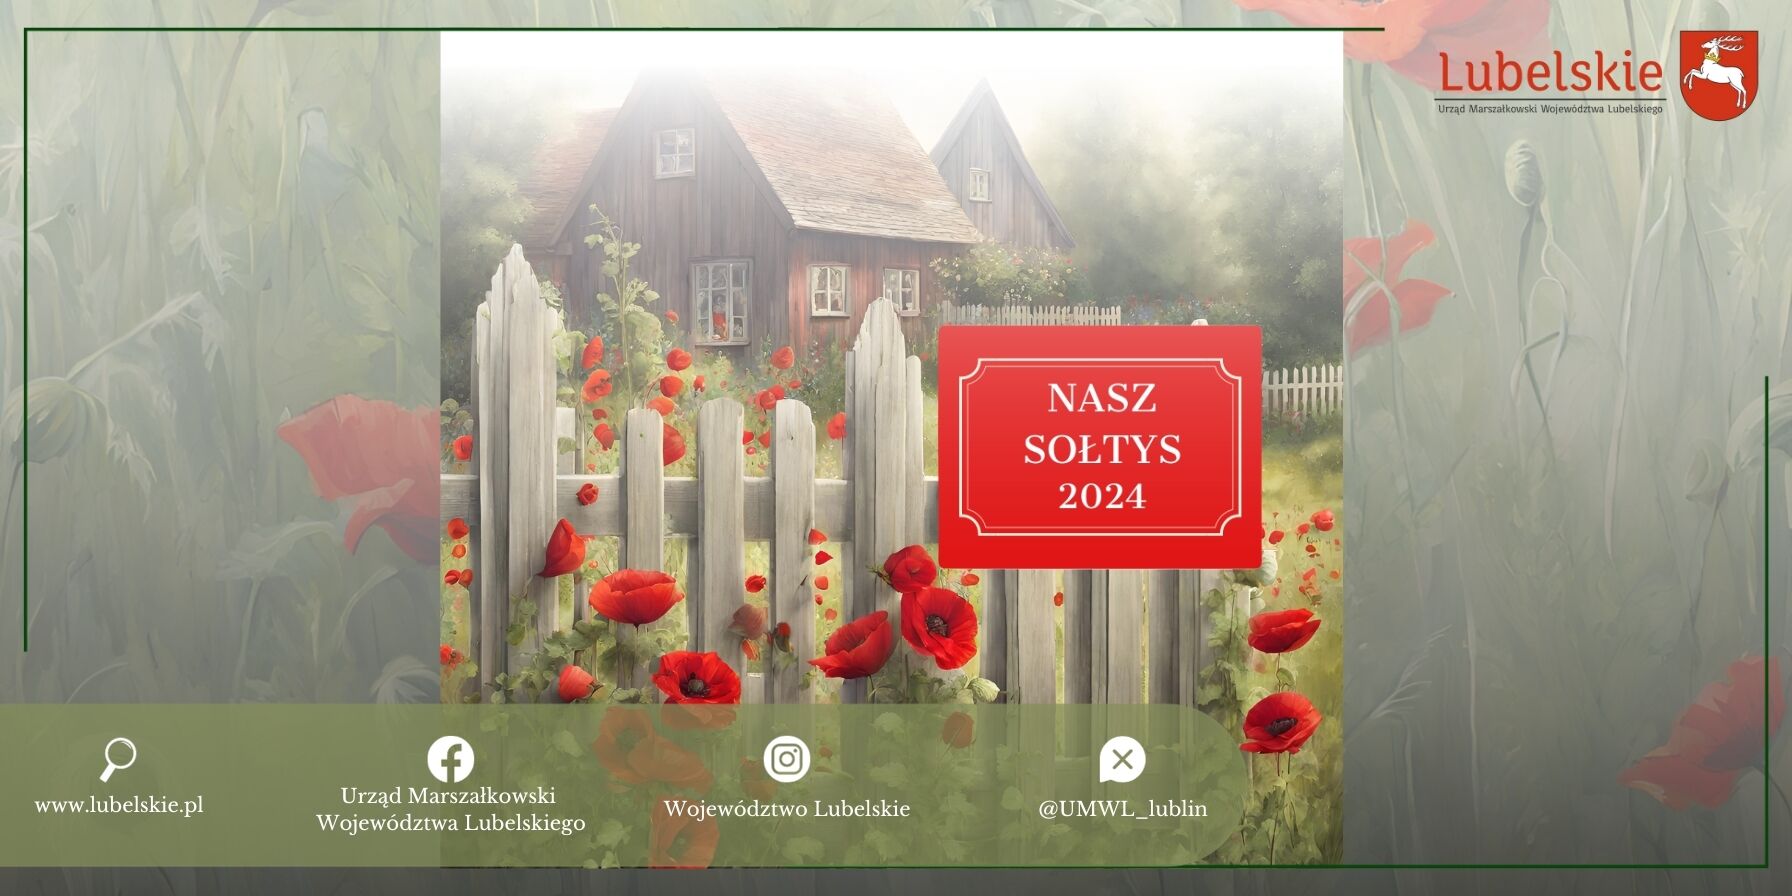 Obraz przedstawia sielski krajobraz z tradycyjnym drewnianym domem za białym płotem, otoczonym przez czerwone maki i zieloną roślinność. W prawym górnym rogu jest napis "NASZ SOŁTYS 2024" oraz logotypy lokalnych urzędów.